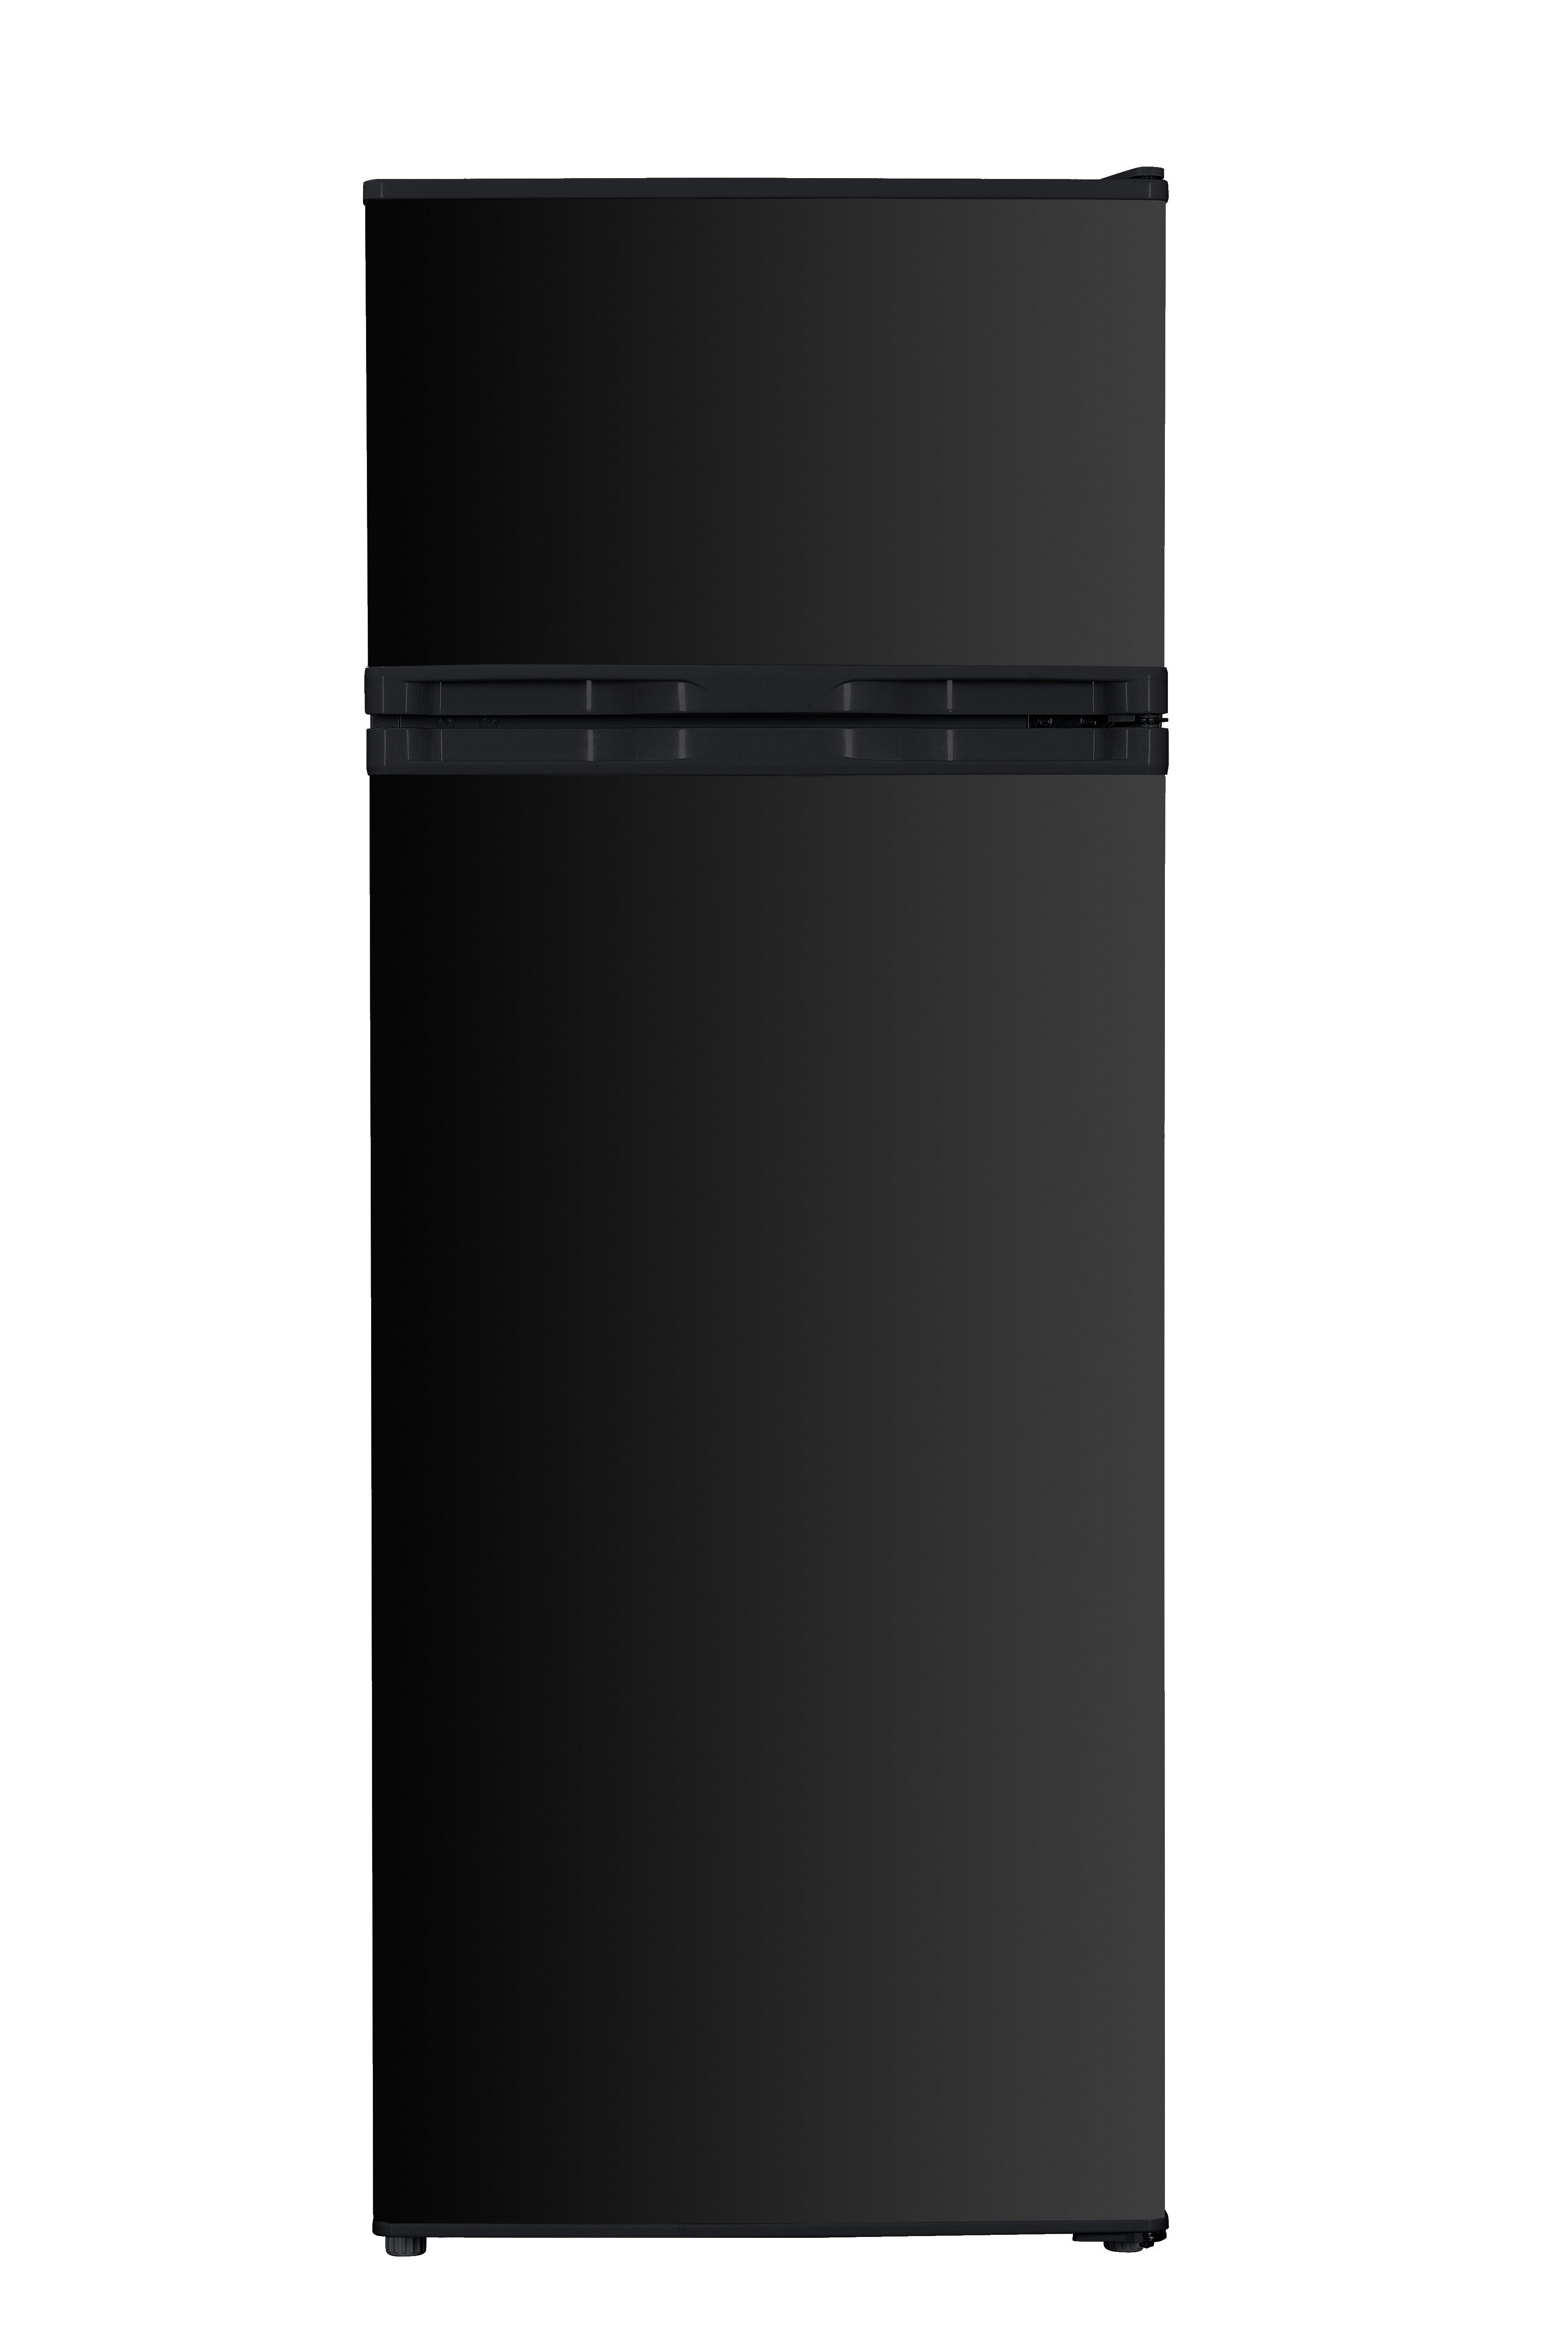 PKM Kühlschrank GK212 B, 143 cm hoch, 54.5 cm breit